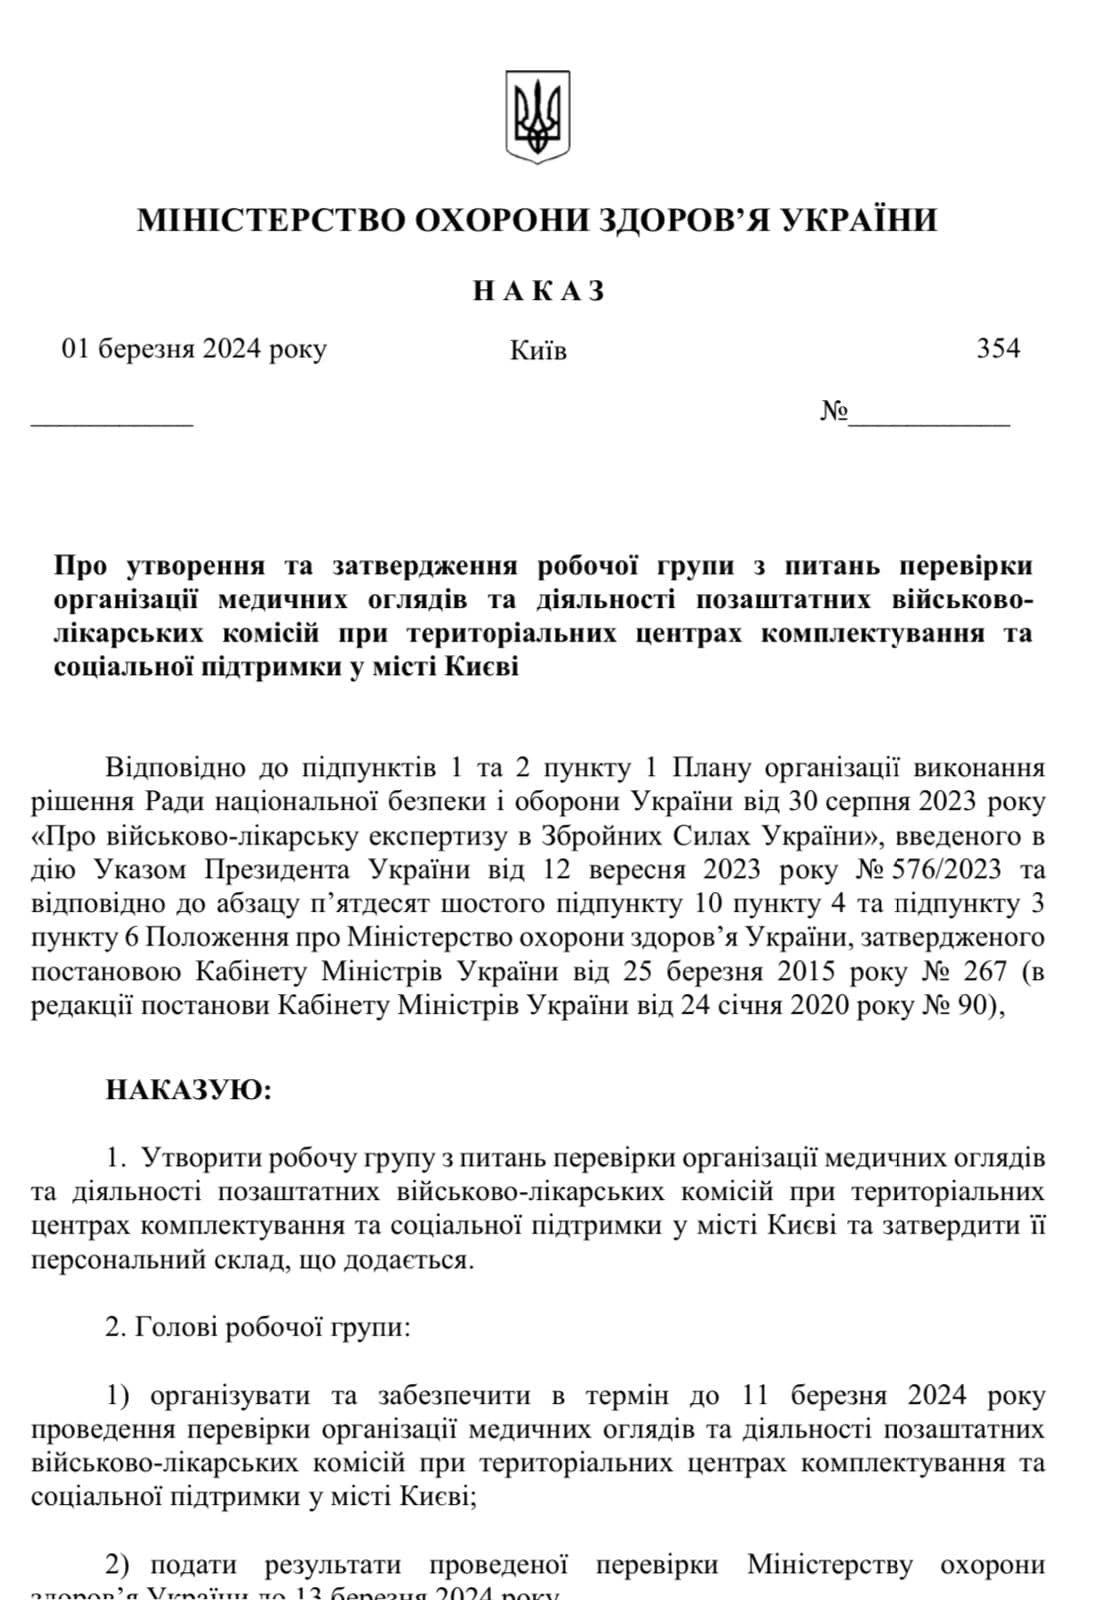 Наказ Віктора Ляшка про створення робочої групи для проведення перевірки ВЛК у Києві